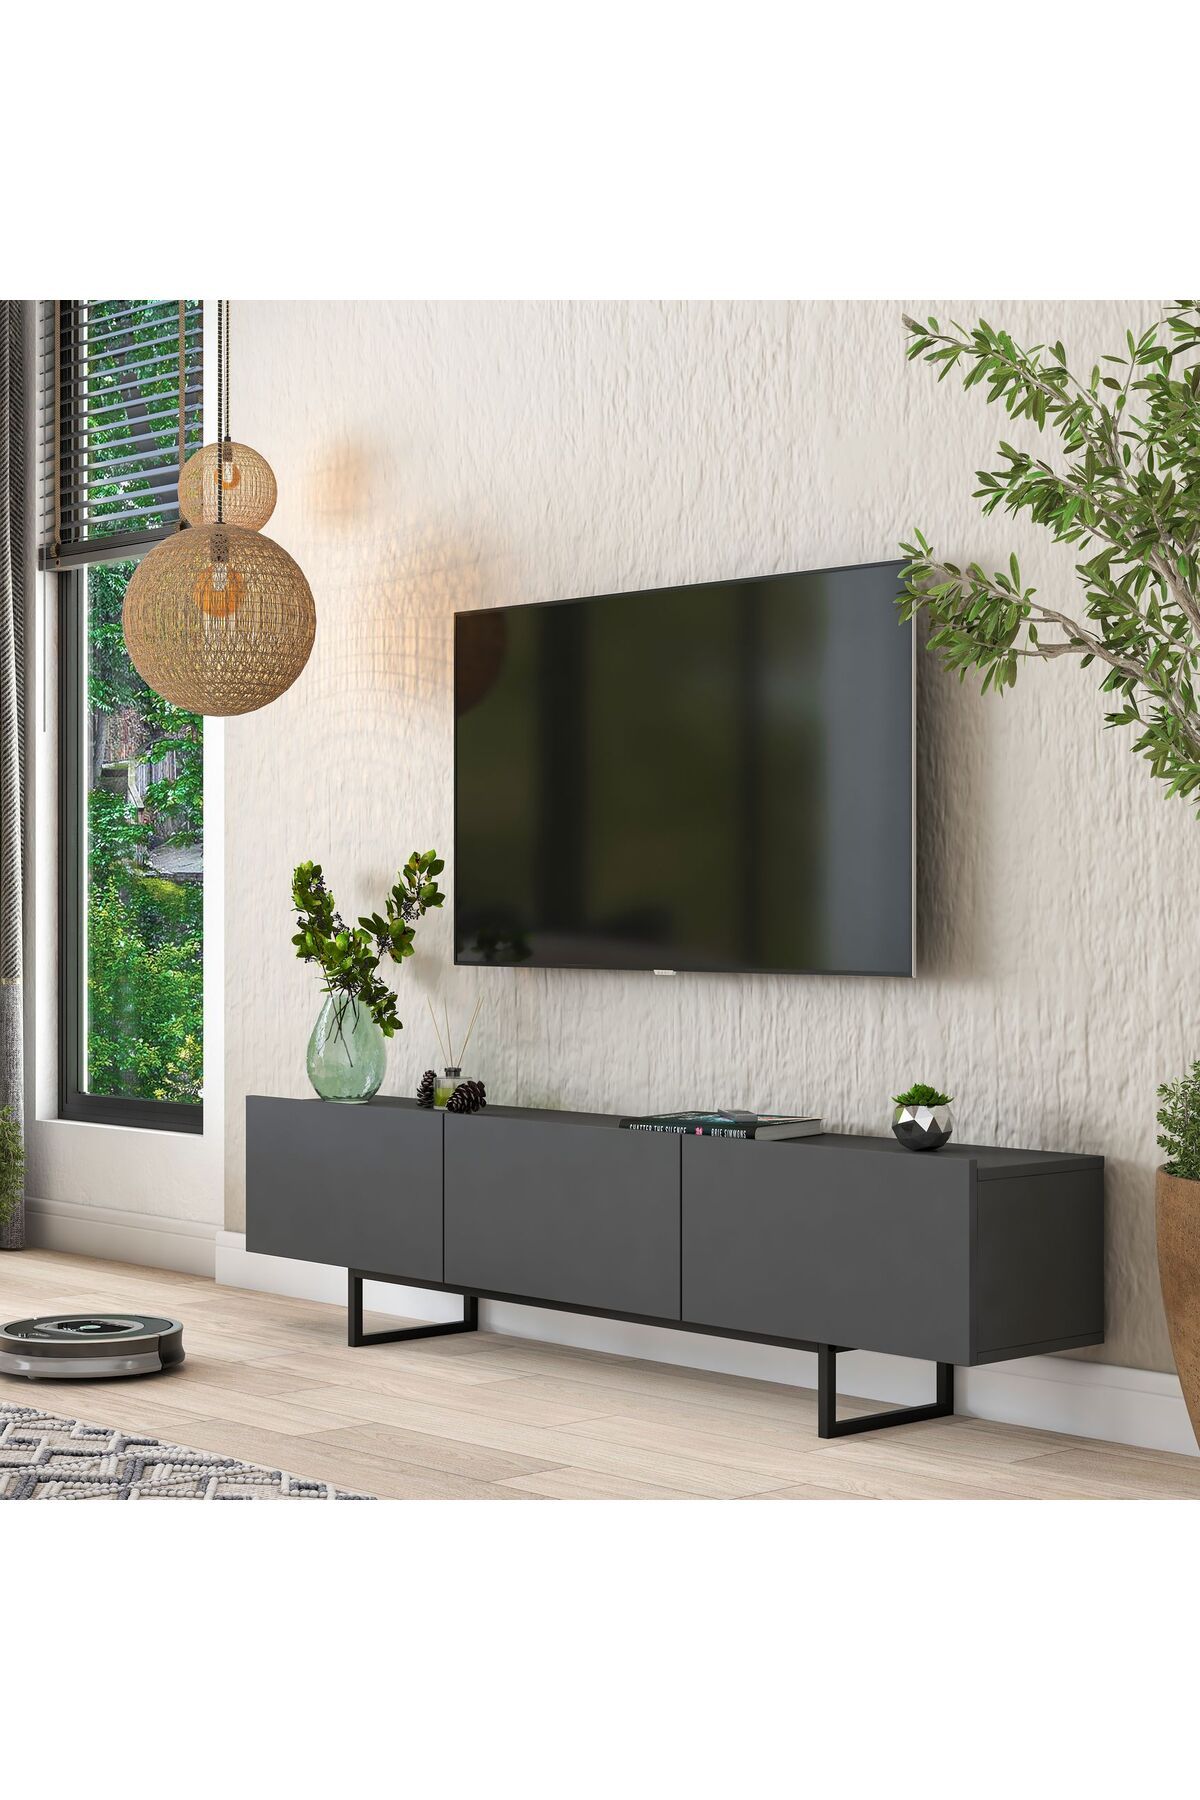 Rani Mobilya Rani AA136 Tv Ünitesi Düşer Kapaklı Metal Ayaklı Tv Sehpası 180 Cm Antrasit